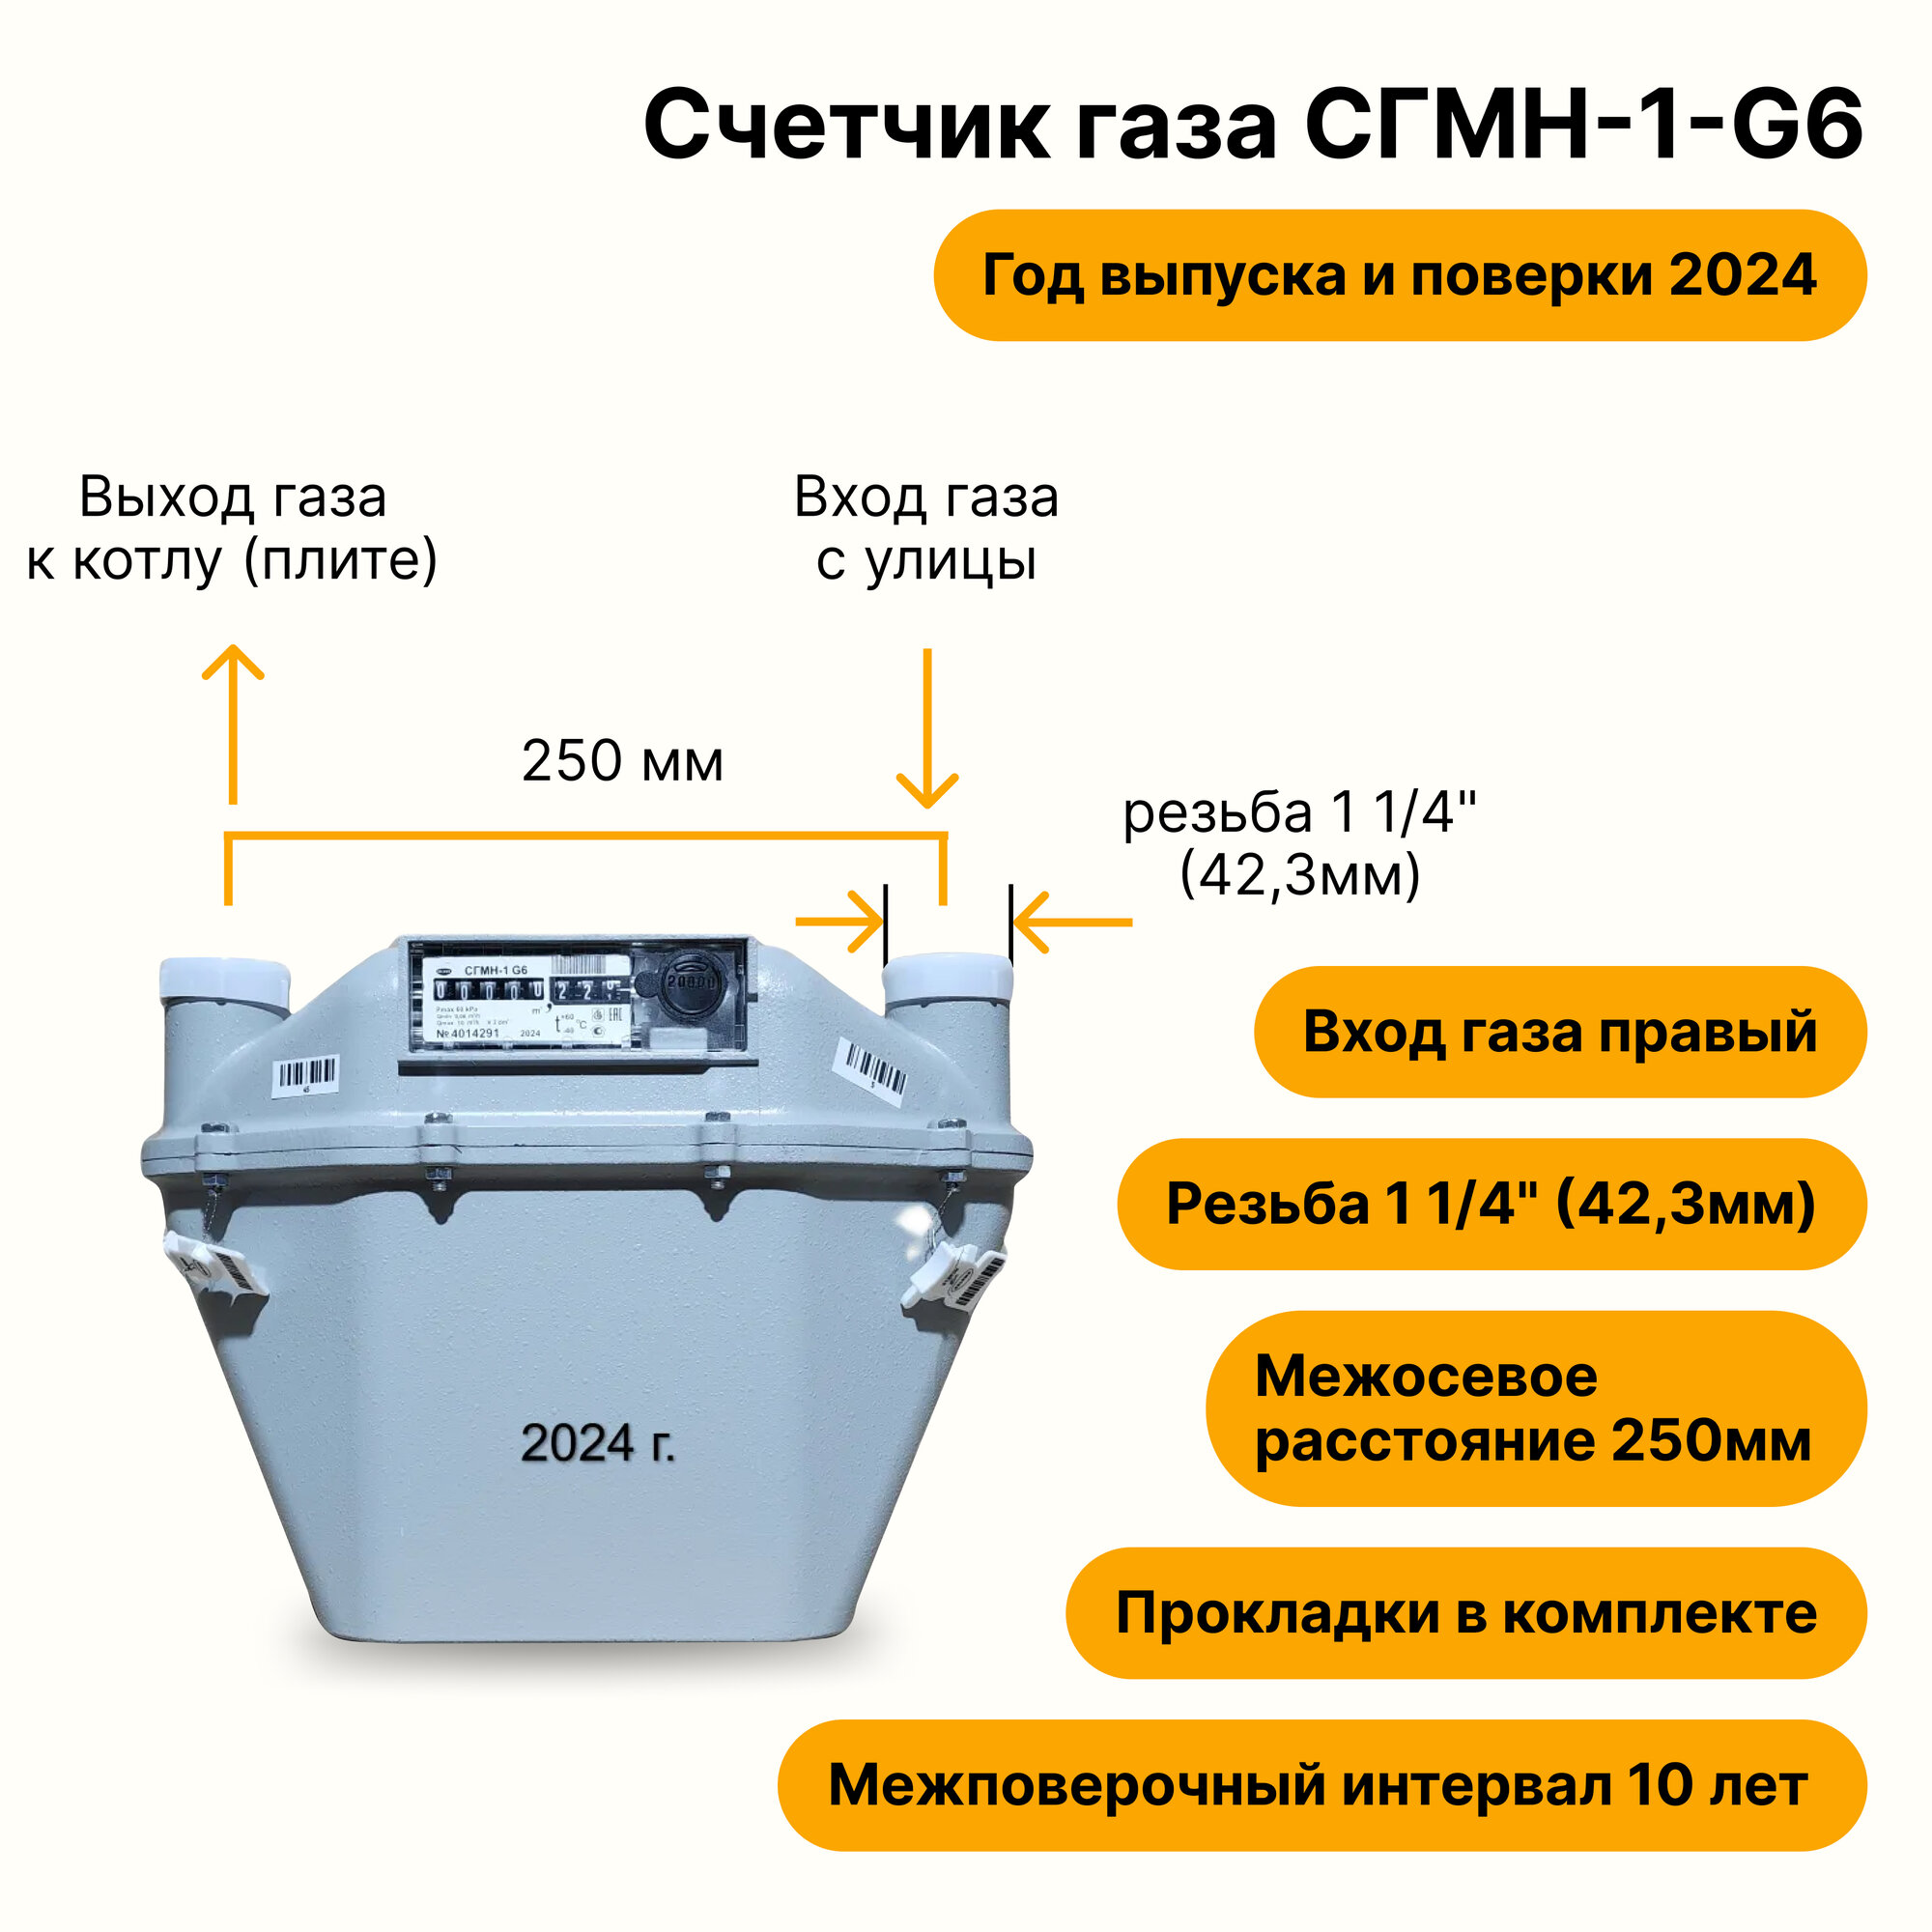 СГМН-1-G6 (вход газа правый, 250мм, резьба 1 1/4" как ВК-6, прокладки В комплекте) 2024 года выпуска и поверки